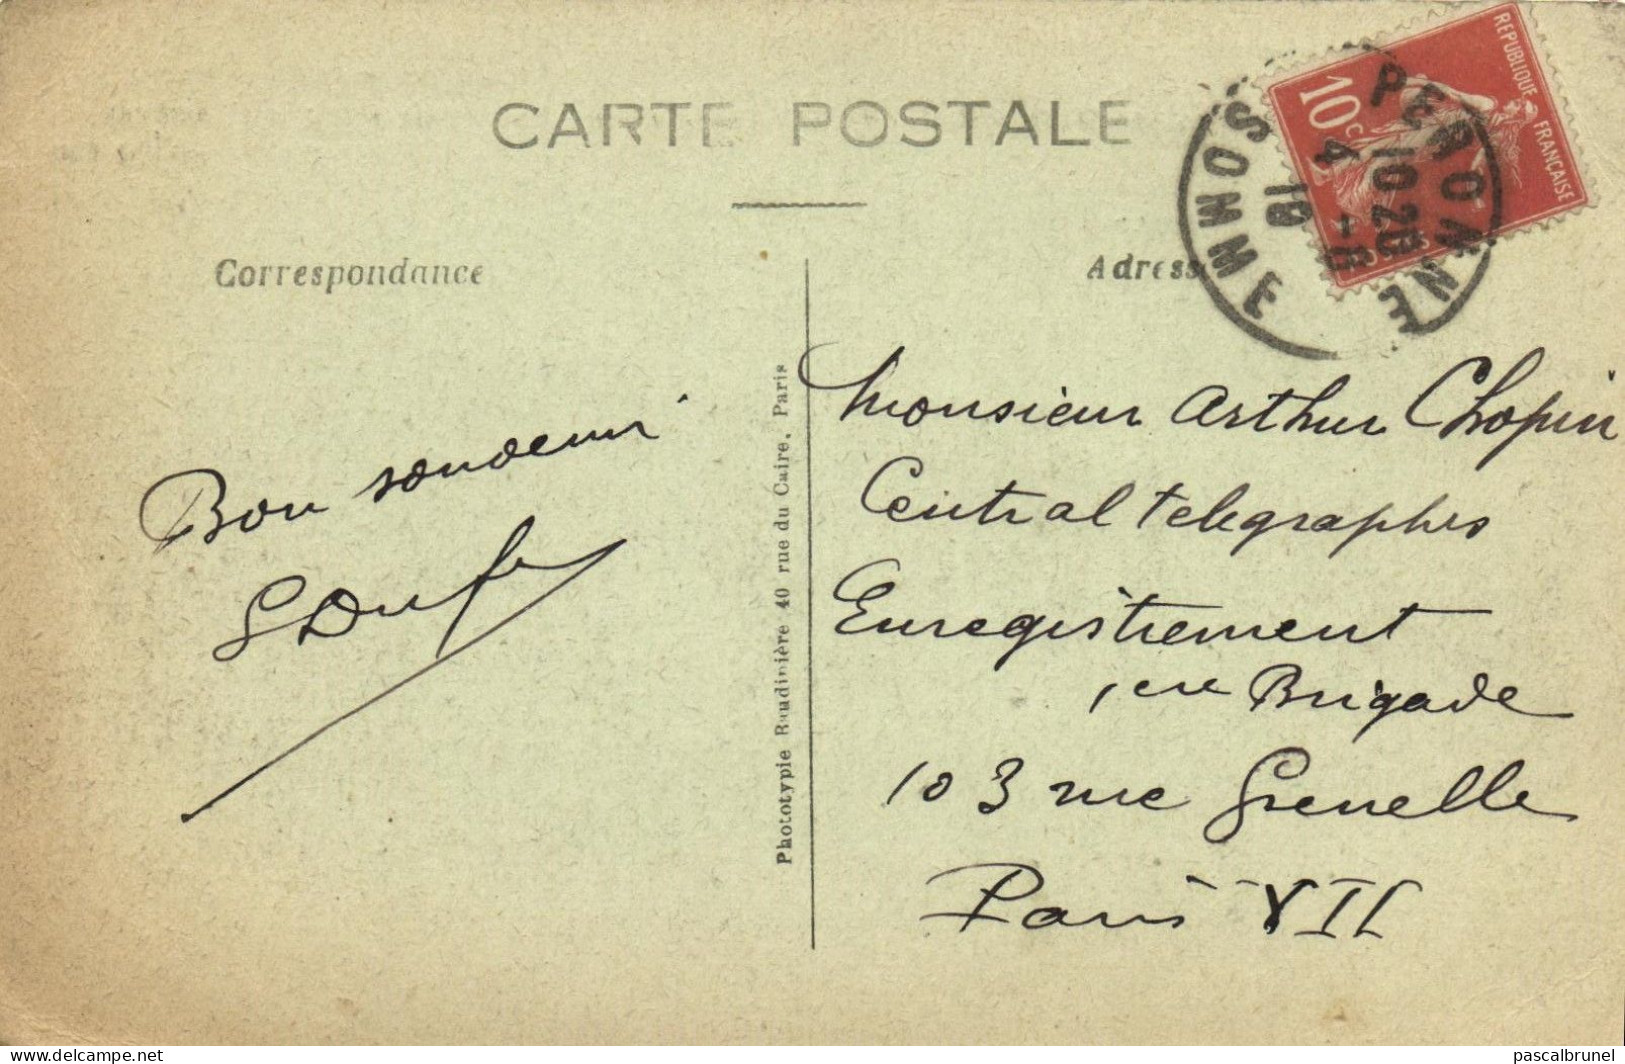 BEUVRAIGNES - VUE D'ENSEMBLE DES DECOMBRES - LA FRANCE RECONQUISE - 1917 - Beuvraignes